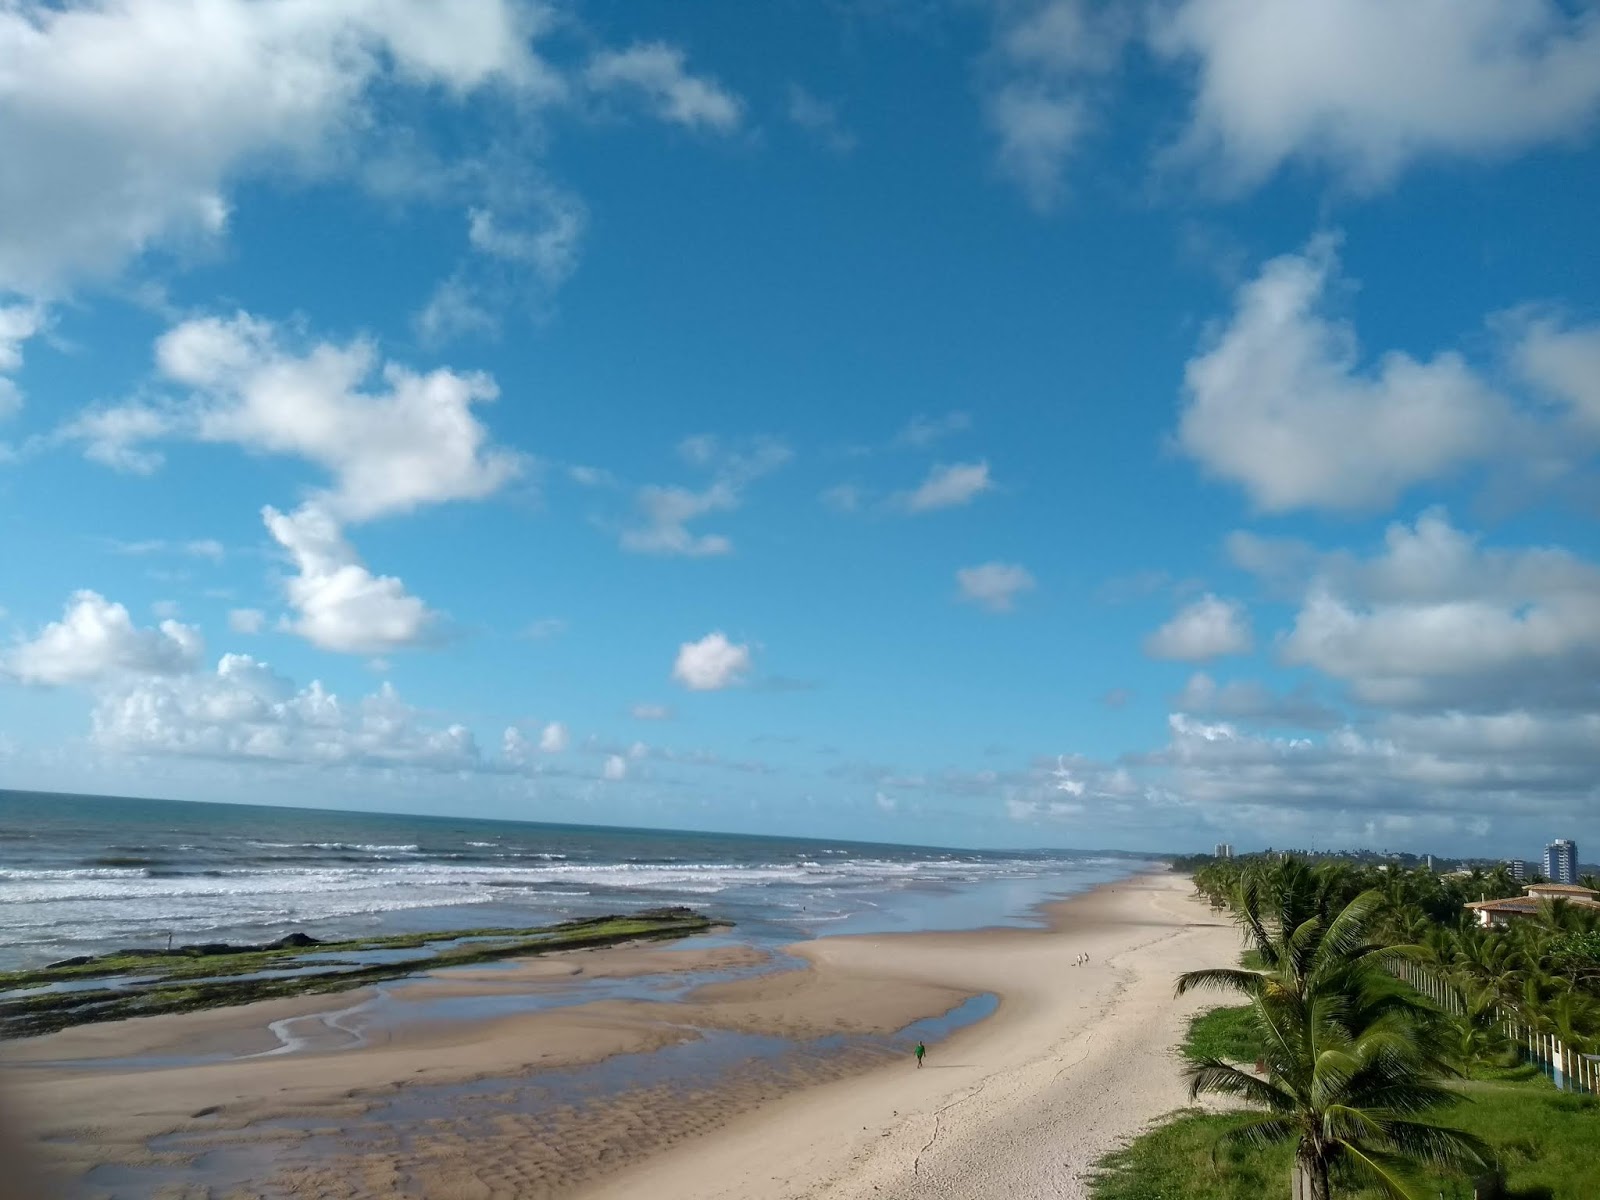 Foto af Praia do Sul - populært sted blandt afslapningskendere